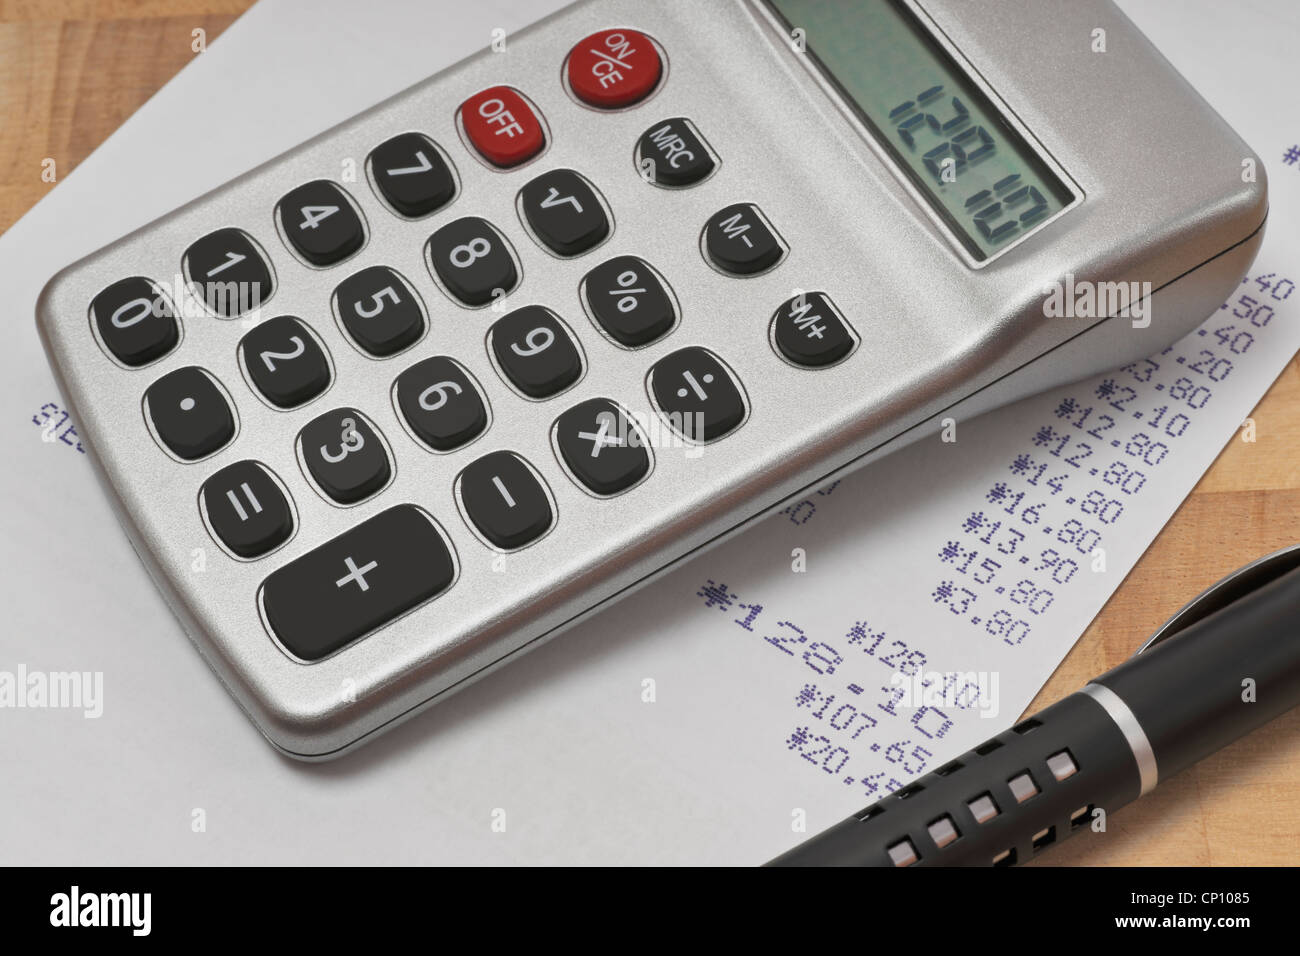 Ein Taschenrechner und ein Stift liegen auf einer Rechnung | una calcolatrice tascabile e una penna giacente su una fattura Foto Stock